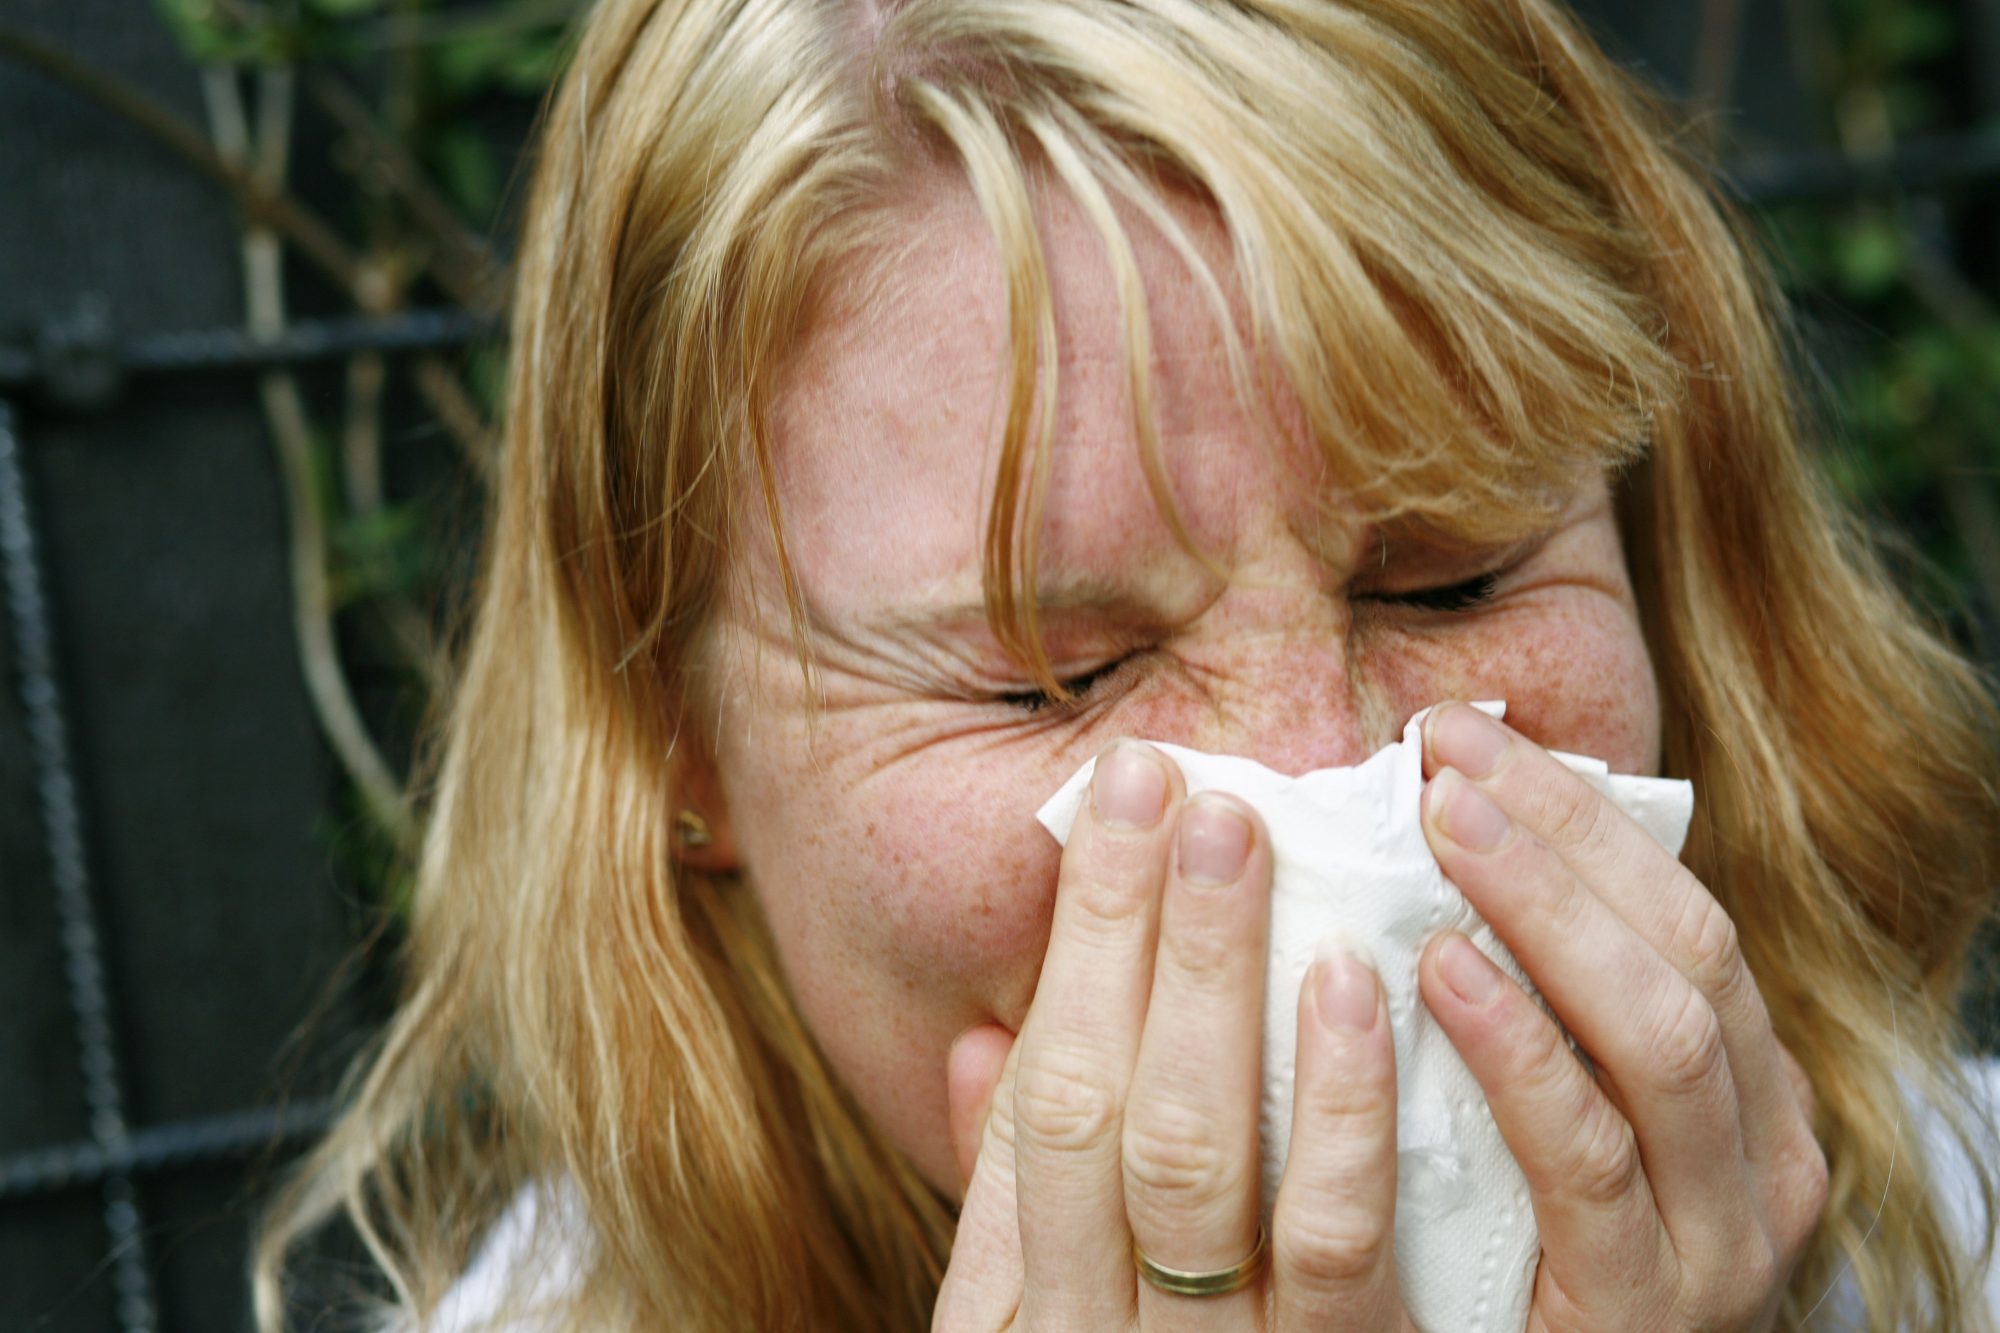 Over halvparten av pollenallergikarane på Vestlandet kjenner seg trøytte i vår- og sommarsesongen, men ein av tre vestlendngar behandlar likevel ikkje allergien sin med medisin. Foto: Sara Johannessen / NTB Scanpix / NPK